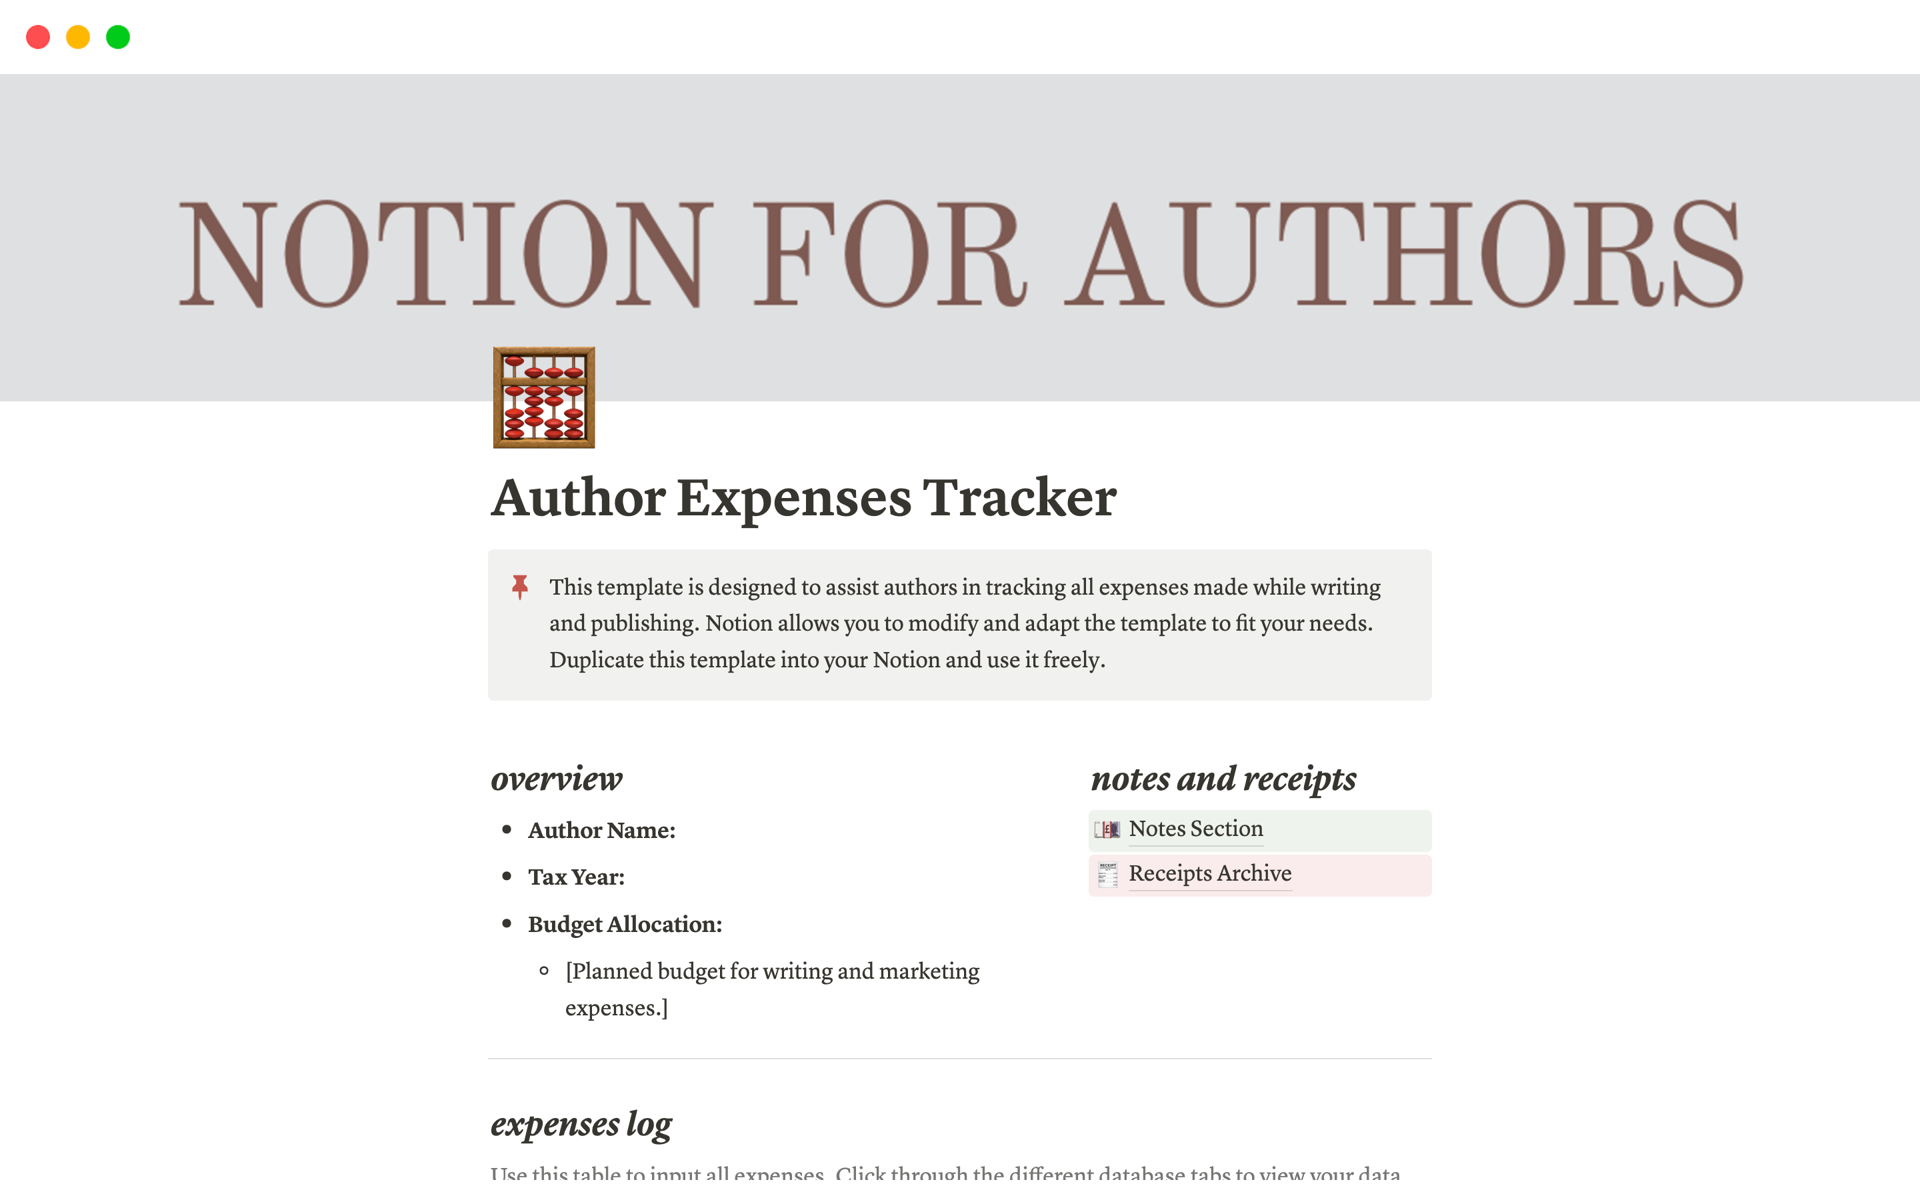 En förhandsgranskning av mallen för Author Expenses Tracker